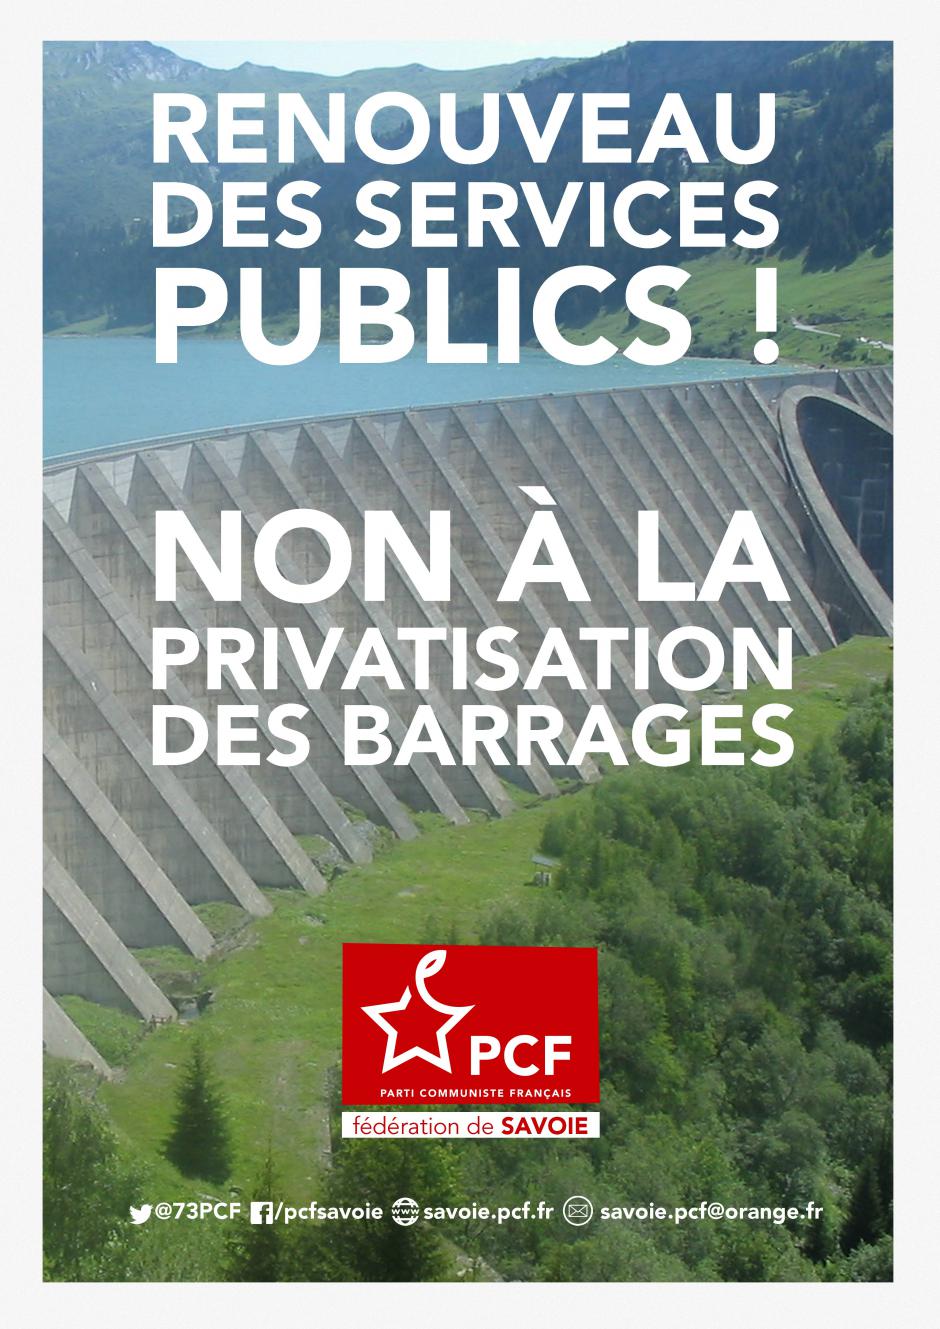 [Affiche] Le PCF73 dit non à la privatisation des barrages.